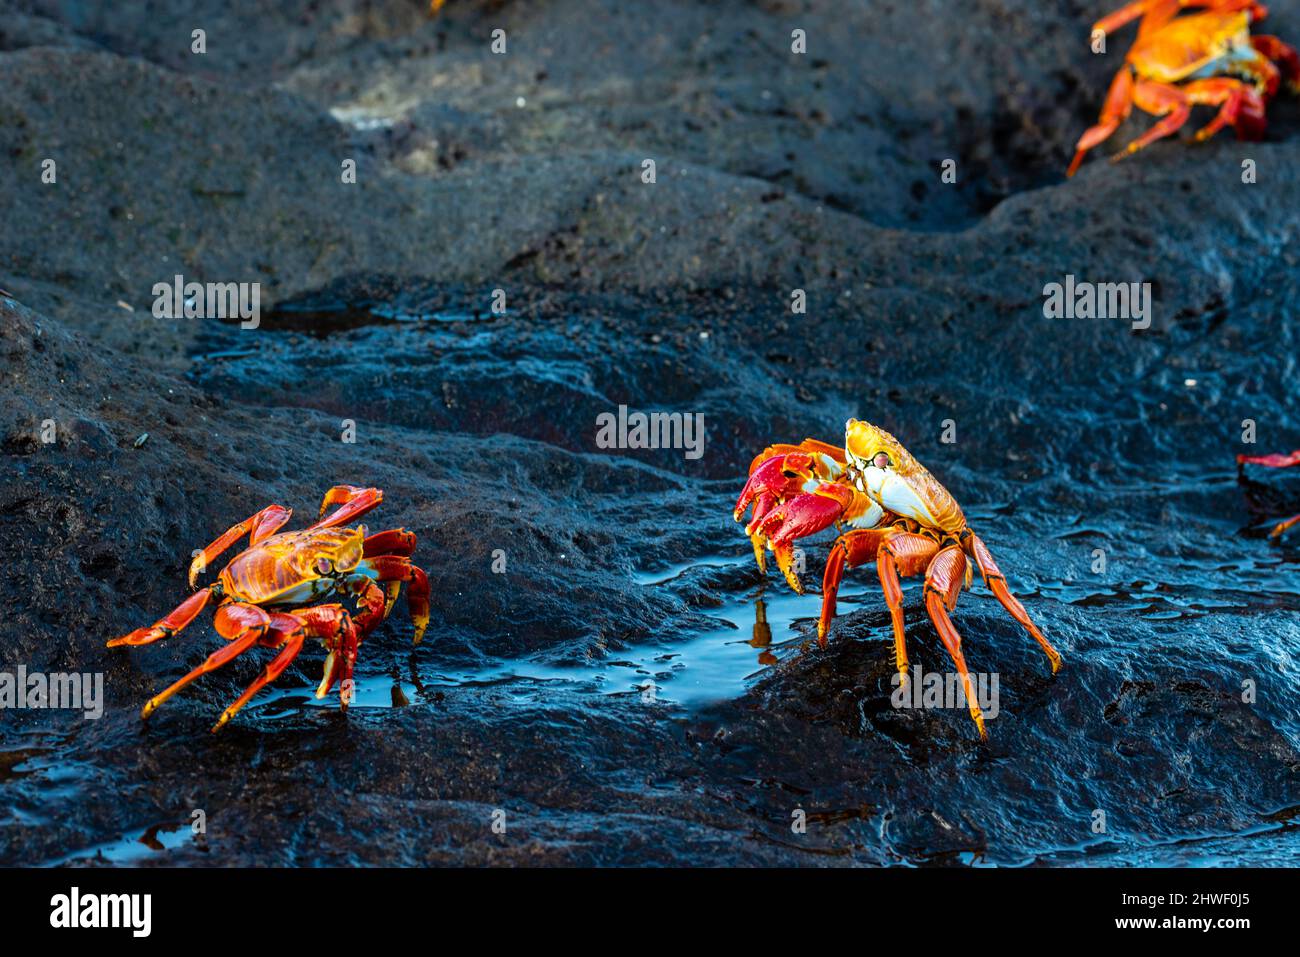 Photograph of Sally Lightfoot crabs (Grapsus grapsu) at Puerto Egas, Isla Santiago, Gal‡pagos Islands, Ecuador. Stock Photo